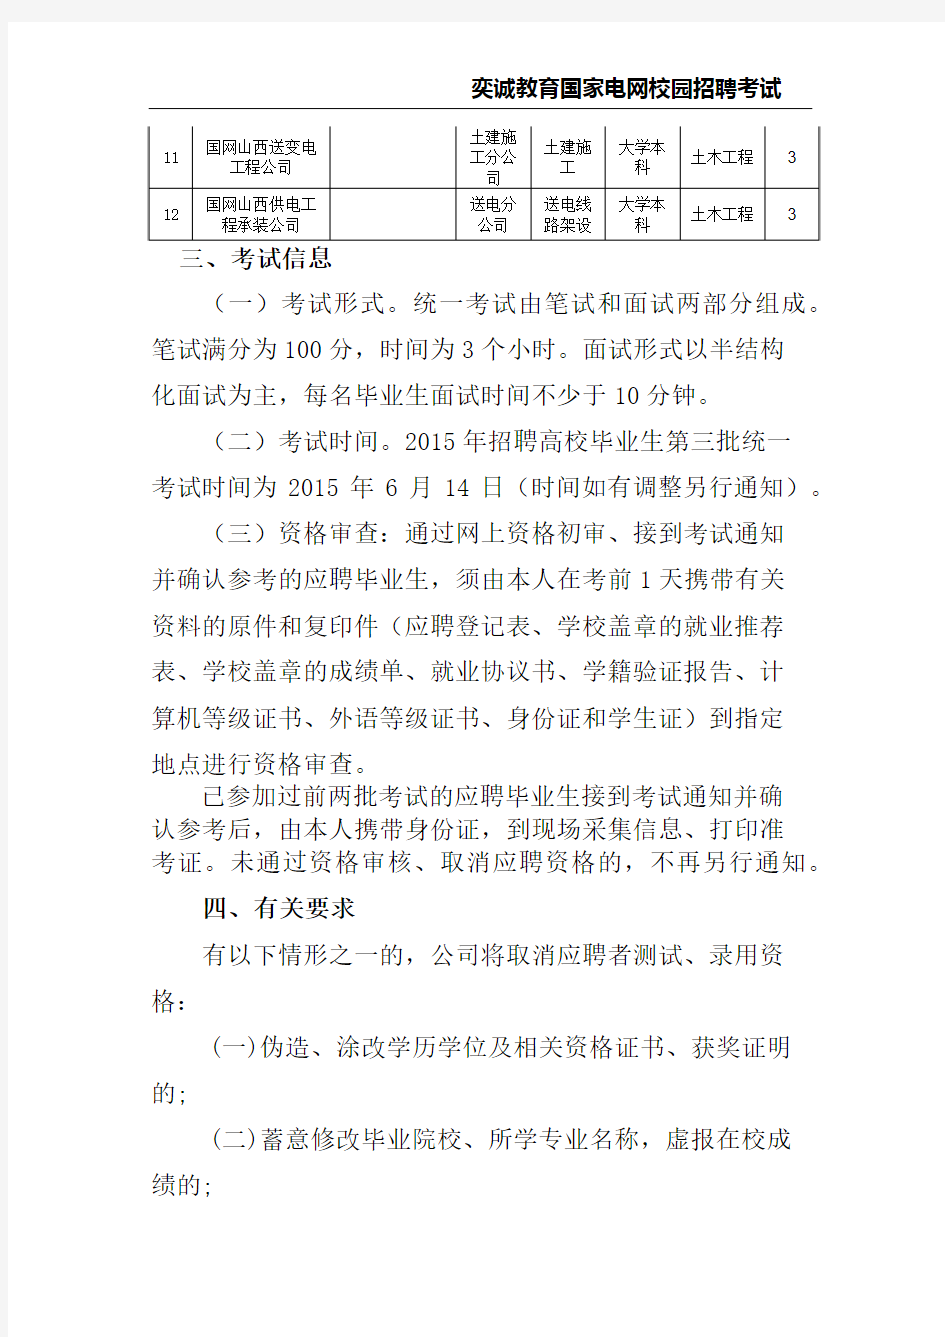 国网山西省电力公司2015年高校毕业生招聘公告(第三批)